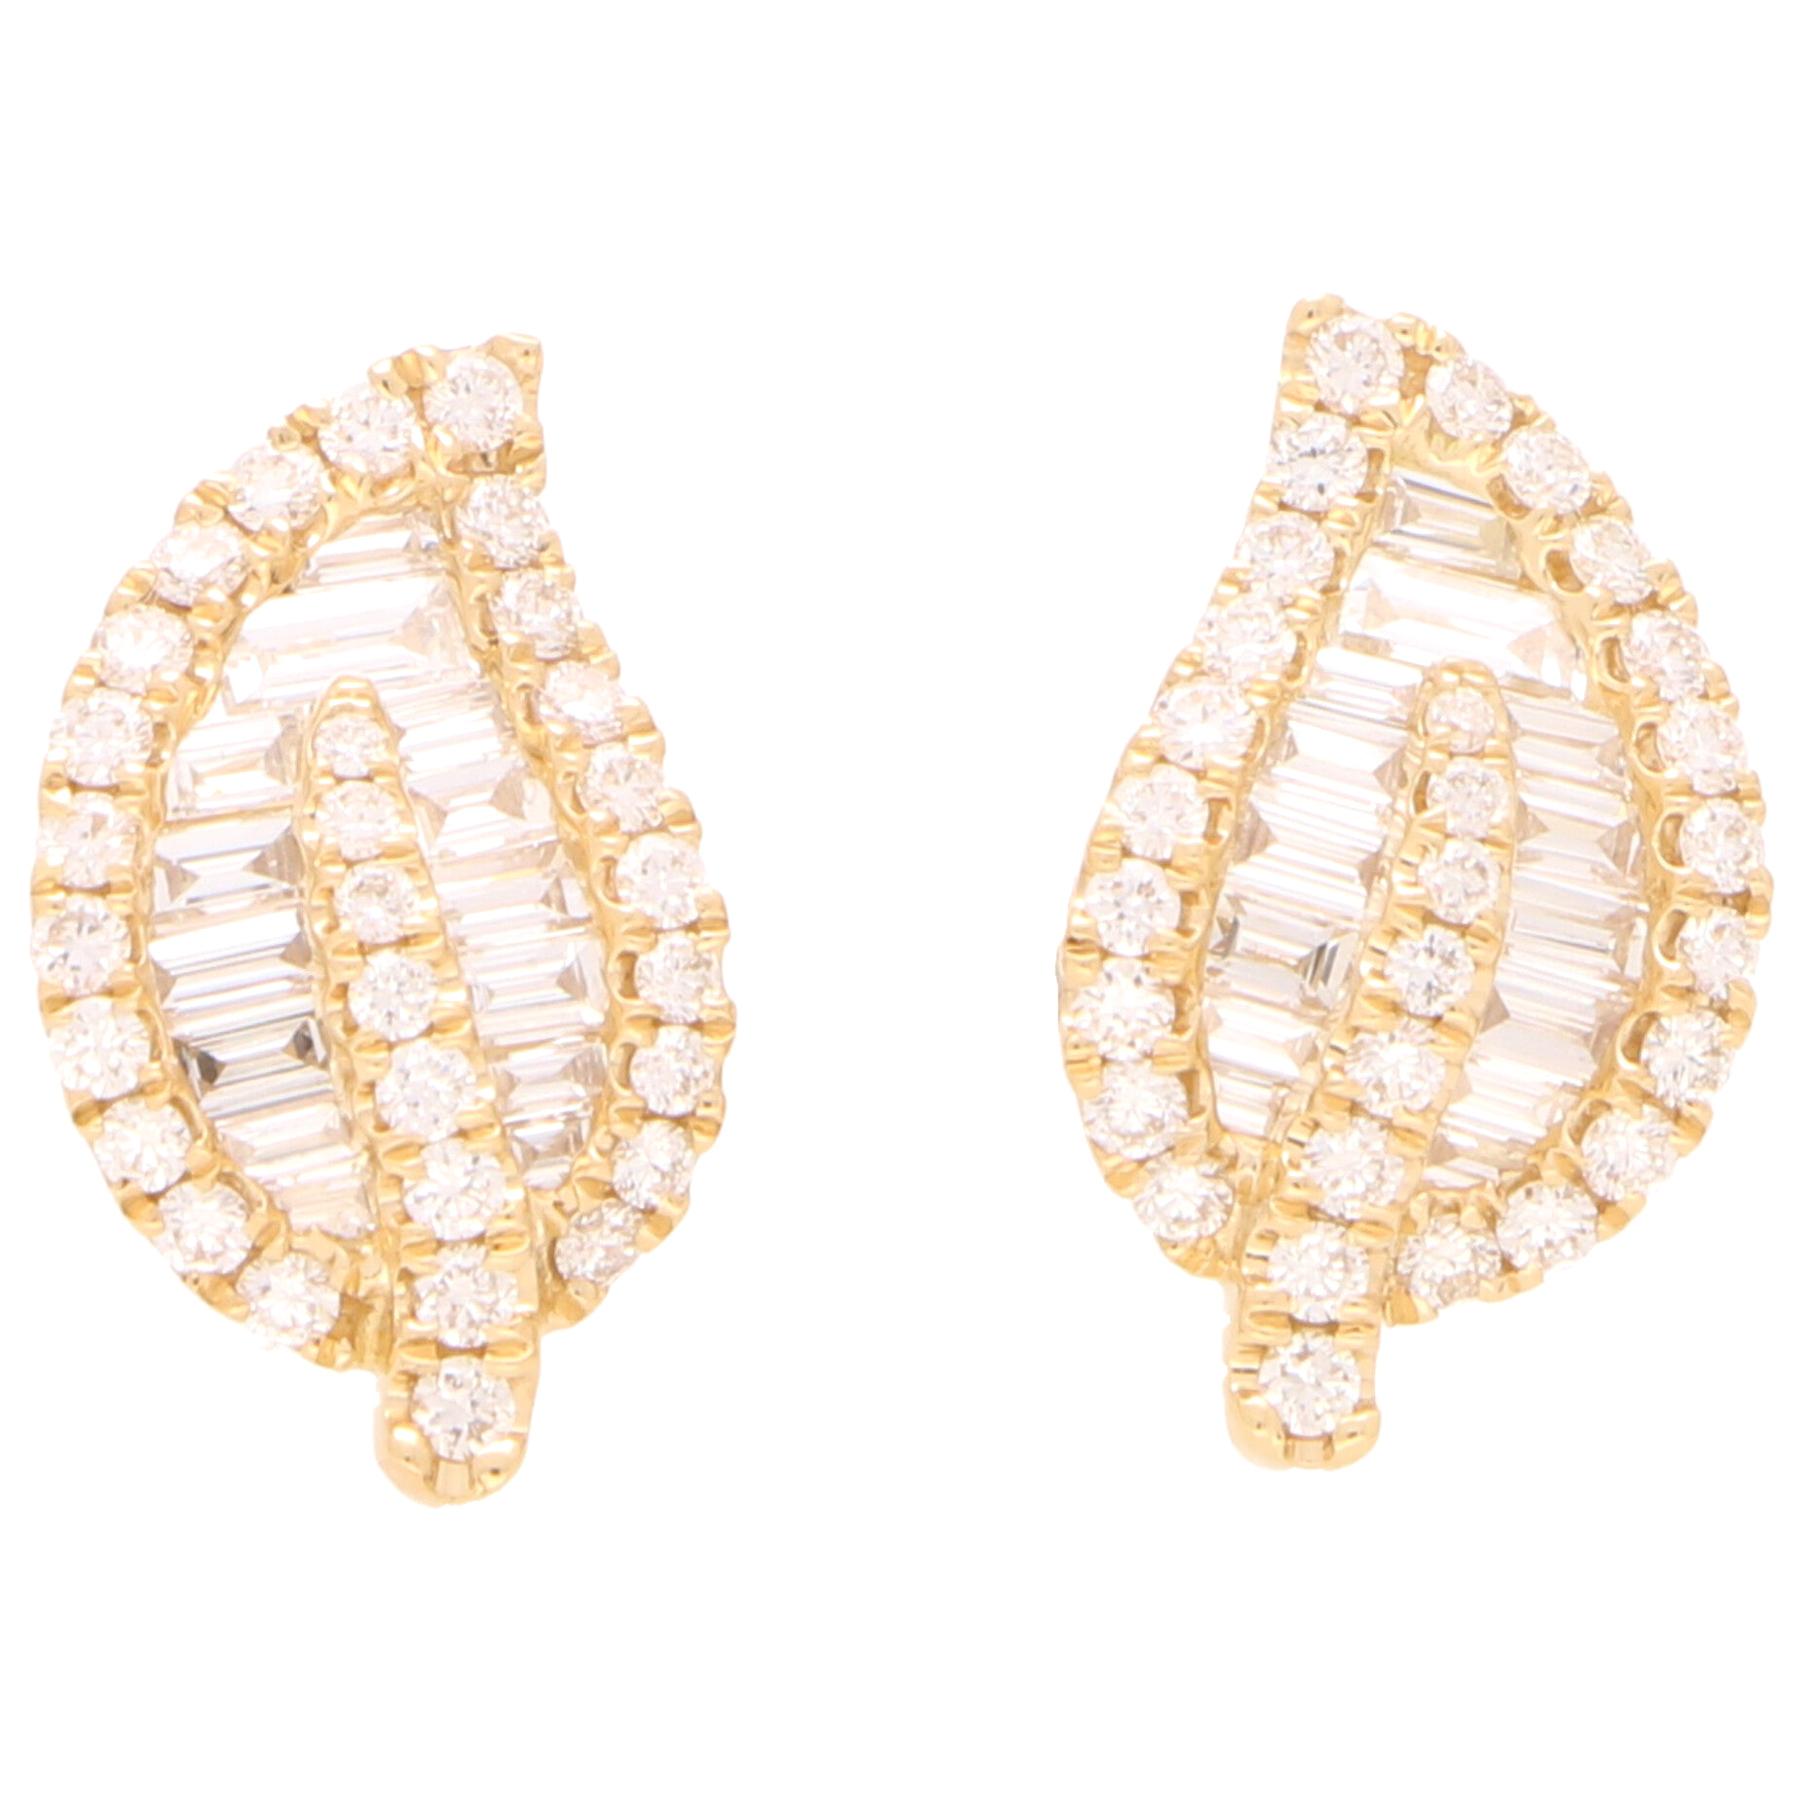 Diamond Leaf Stud Earrings Set in 18 Karat Yellow Gold For Sale